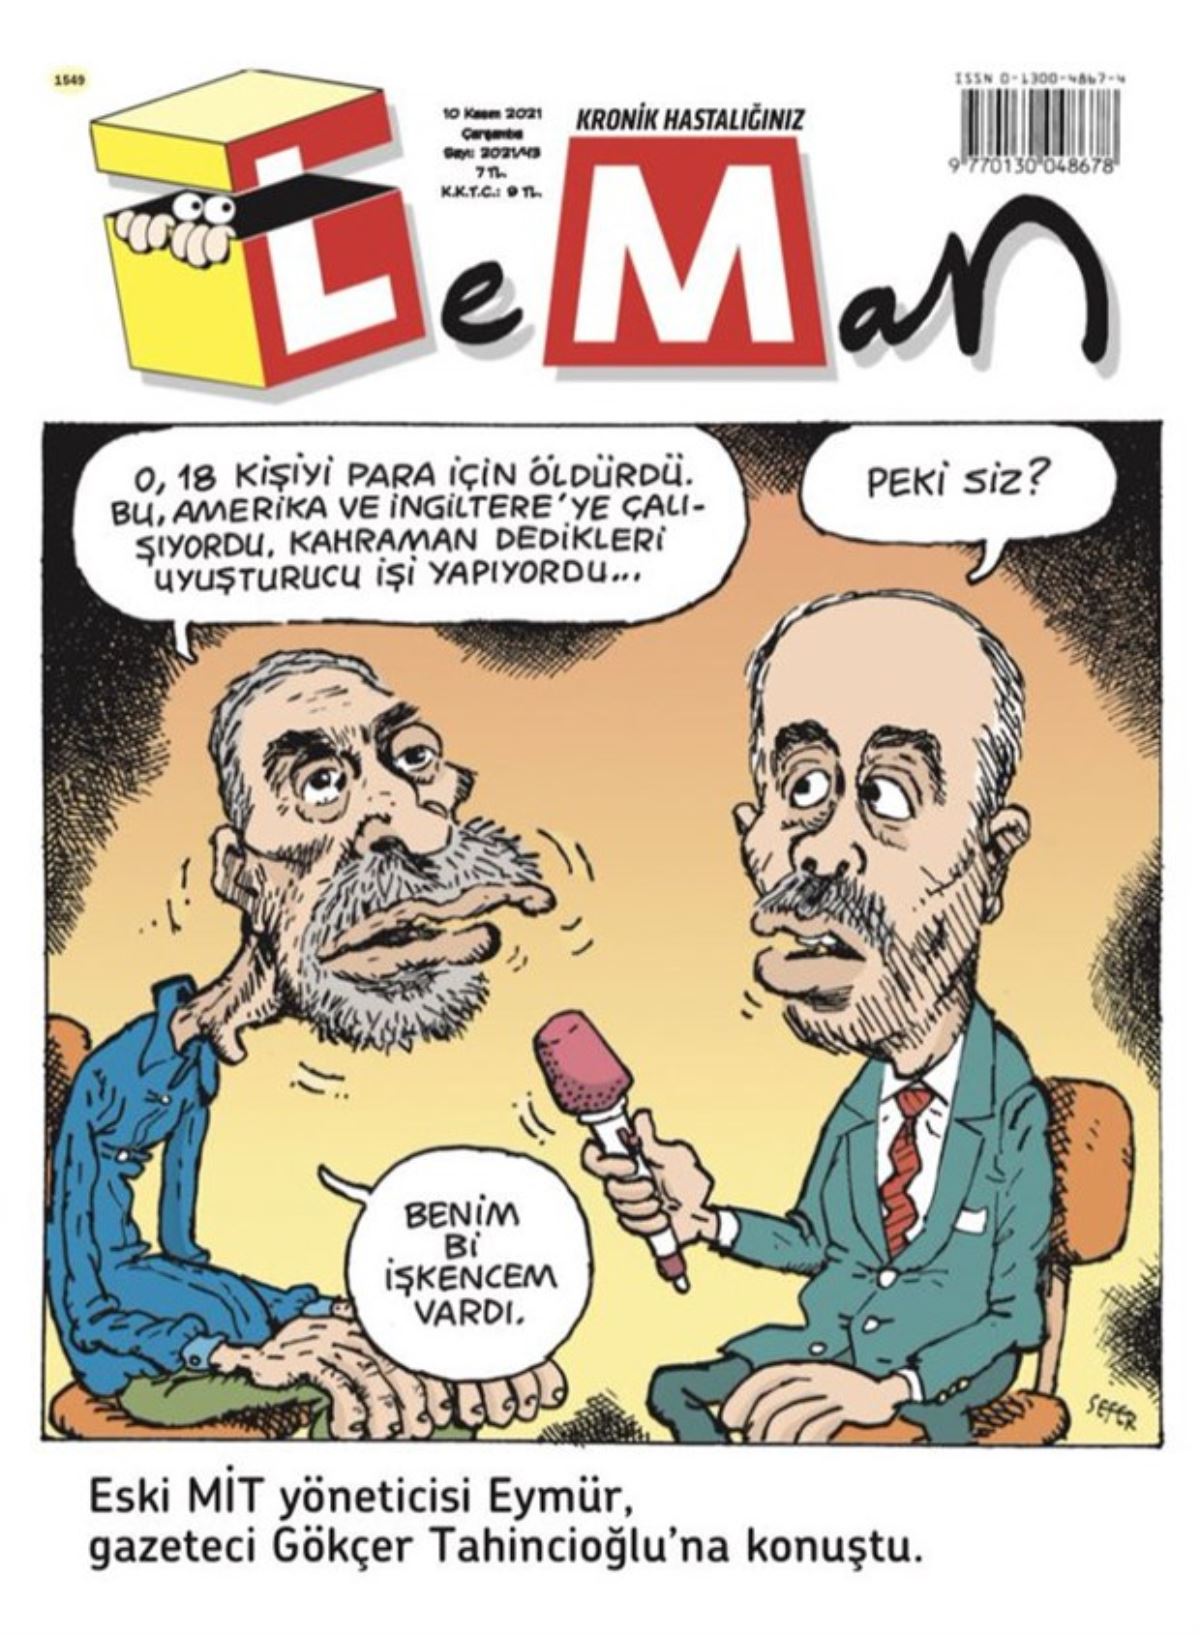 LeMan'dan 'Mehmet Eymür' kapağı